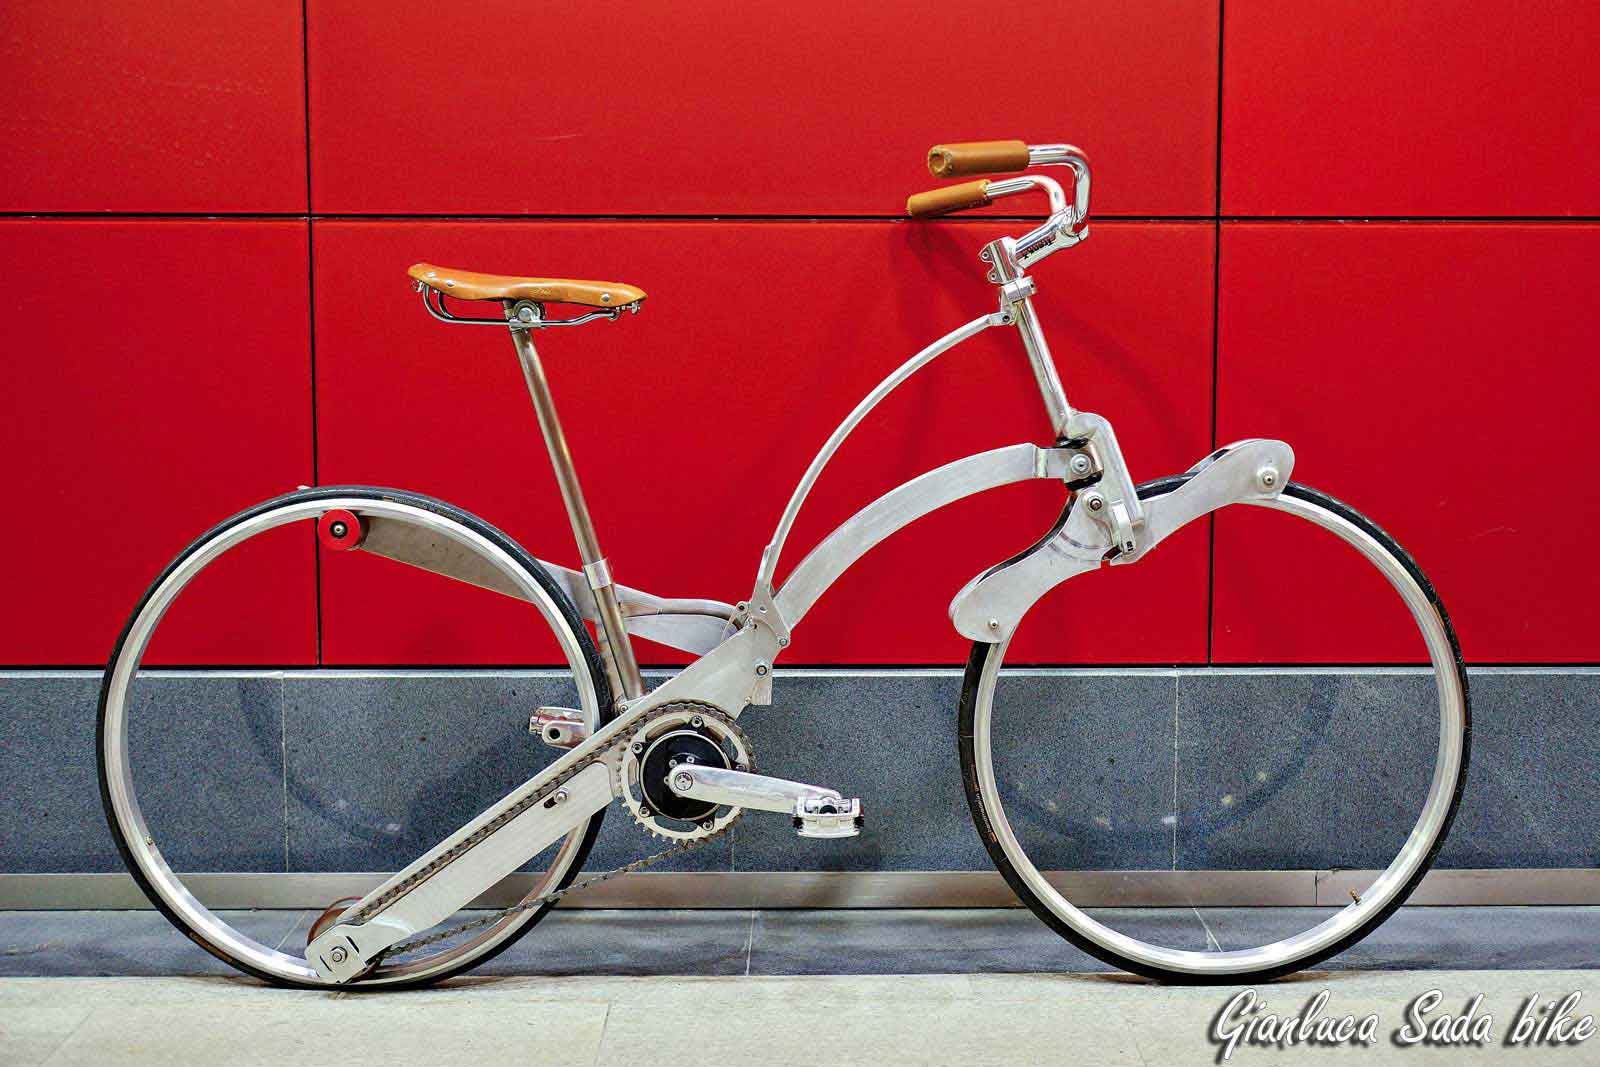 Конструкция велосипеда без спиц в колёсах Обзор моделей на литых дисках и эллиптических лентах Технические особенности и дизайн байка Nulla